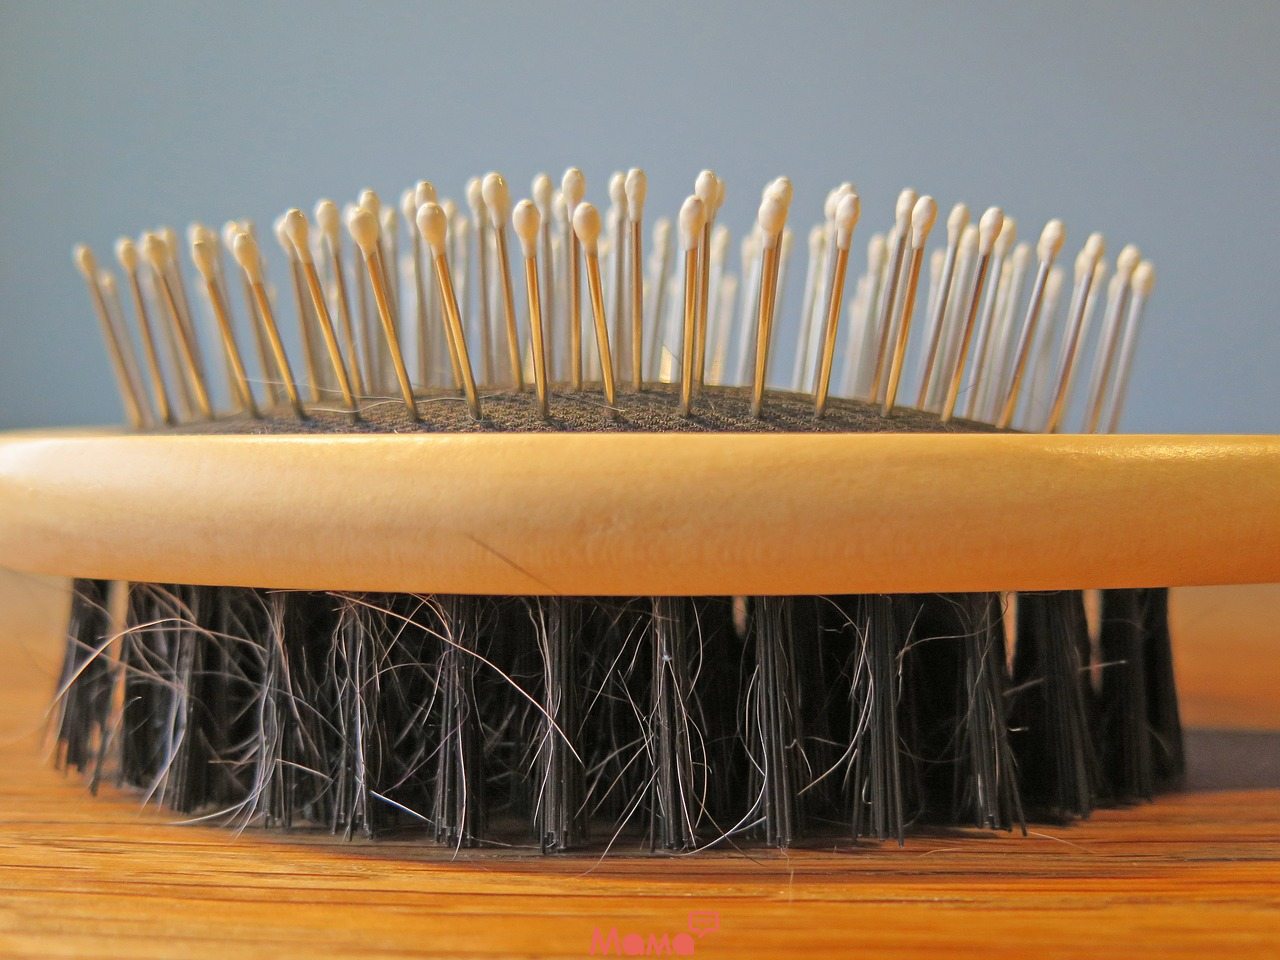   14 привычных вещей, которые вредят волосам
 